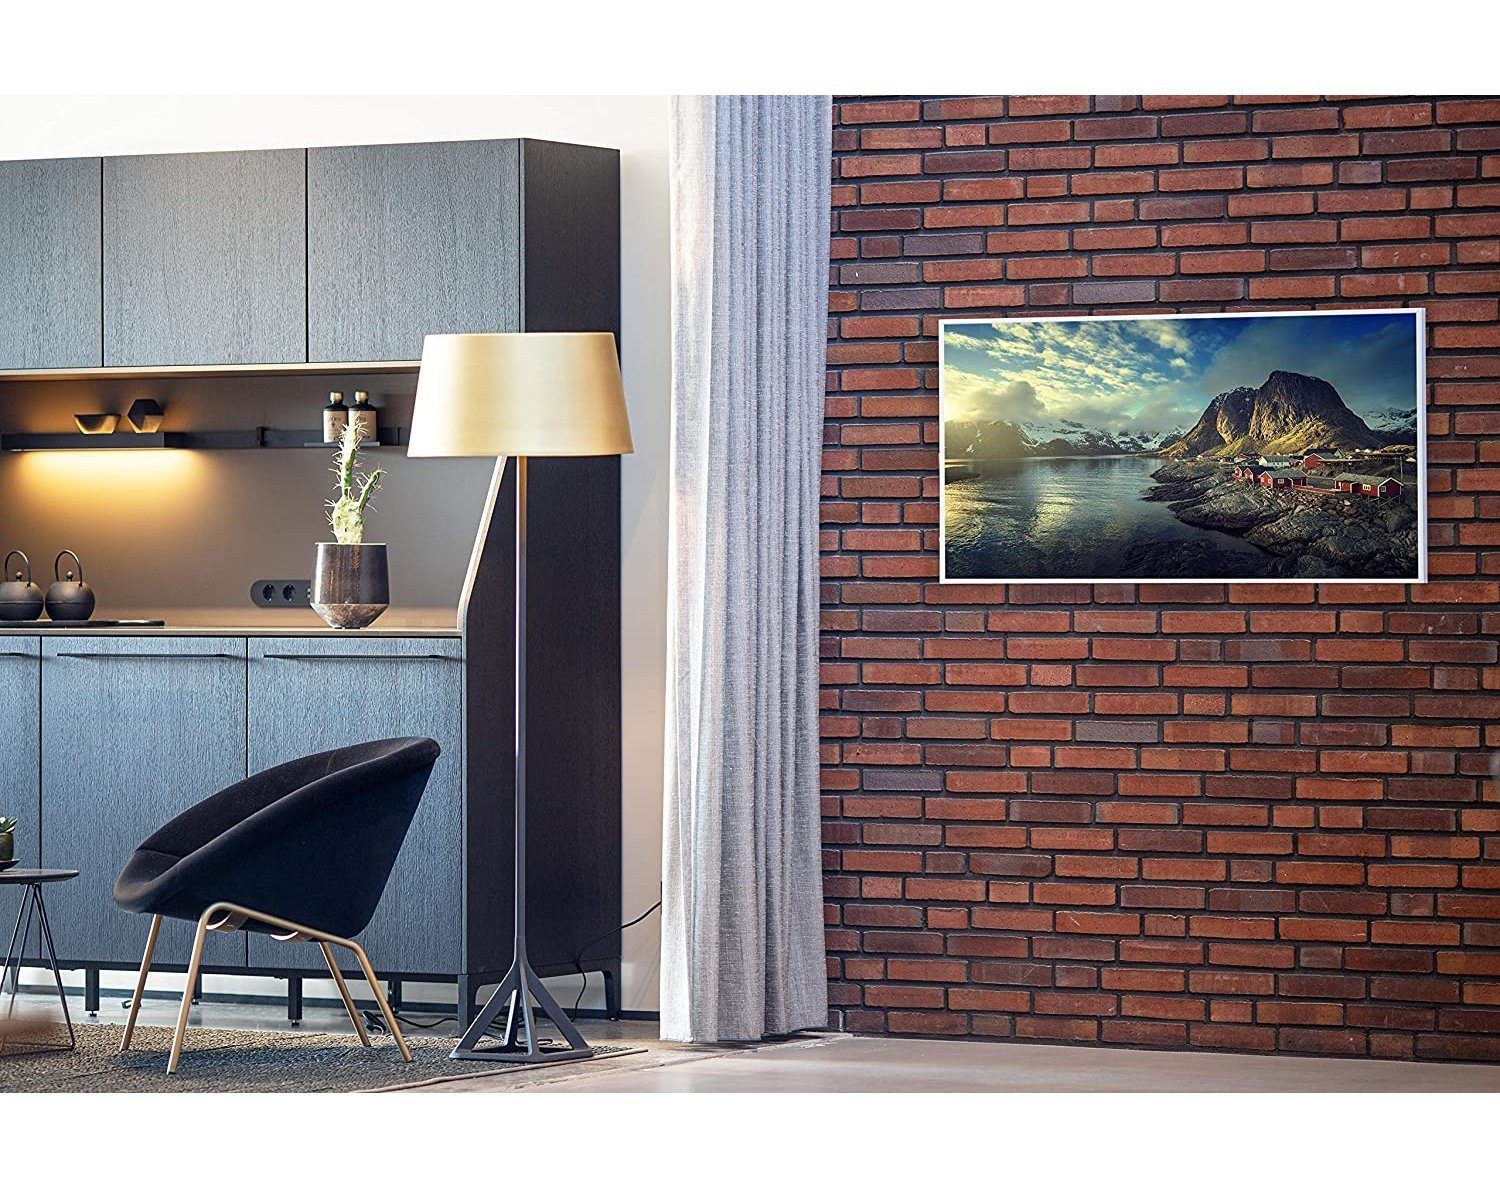 Infrarotheizung Smart, Home 800W Bild-Serie angenehme in Germany, Norwegen Smart Aussicht Strahlungswärme, Könighaus Made